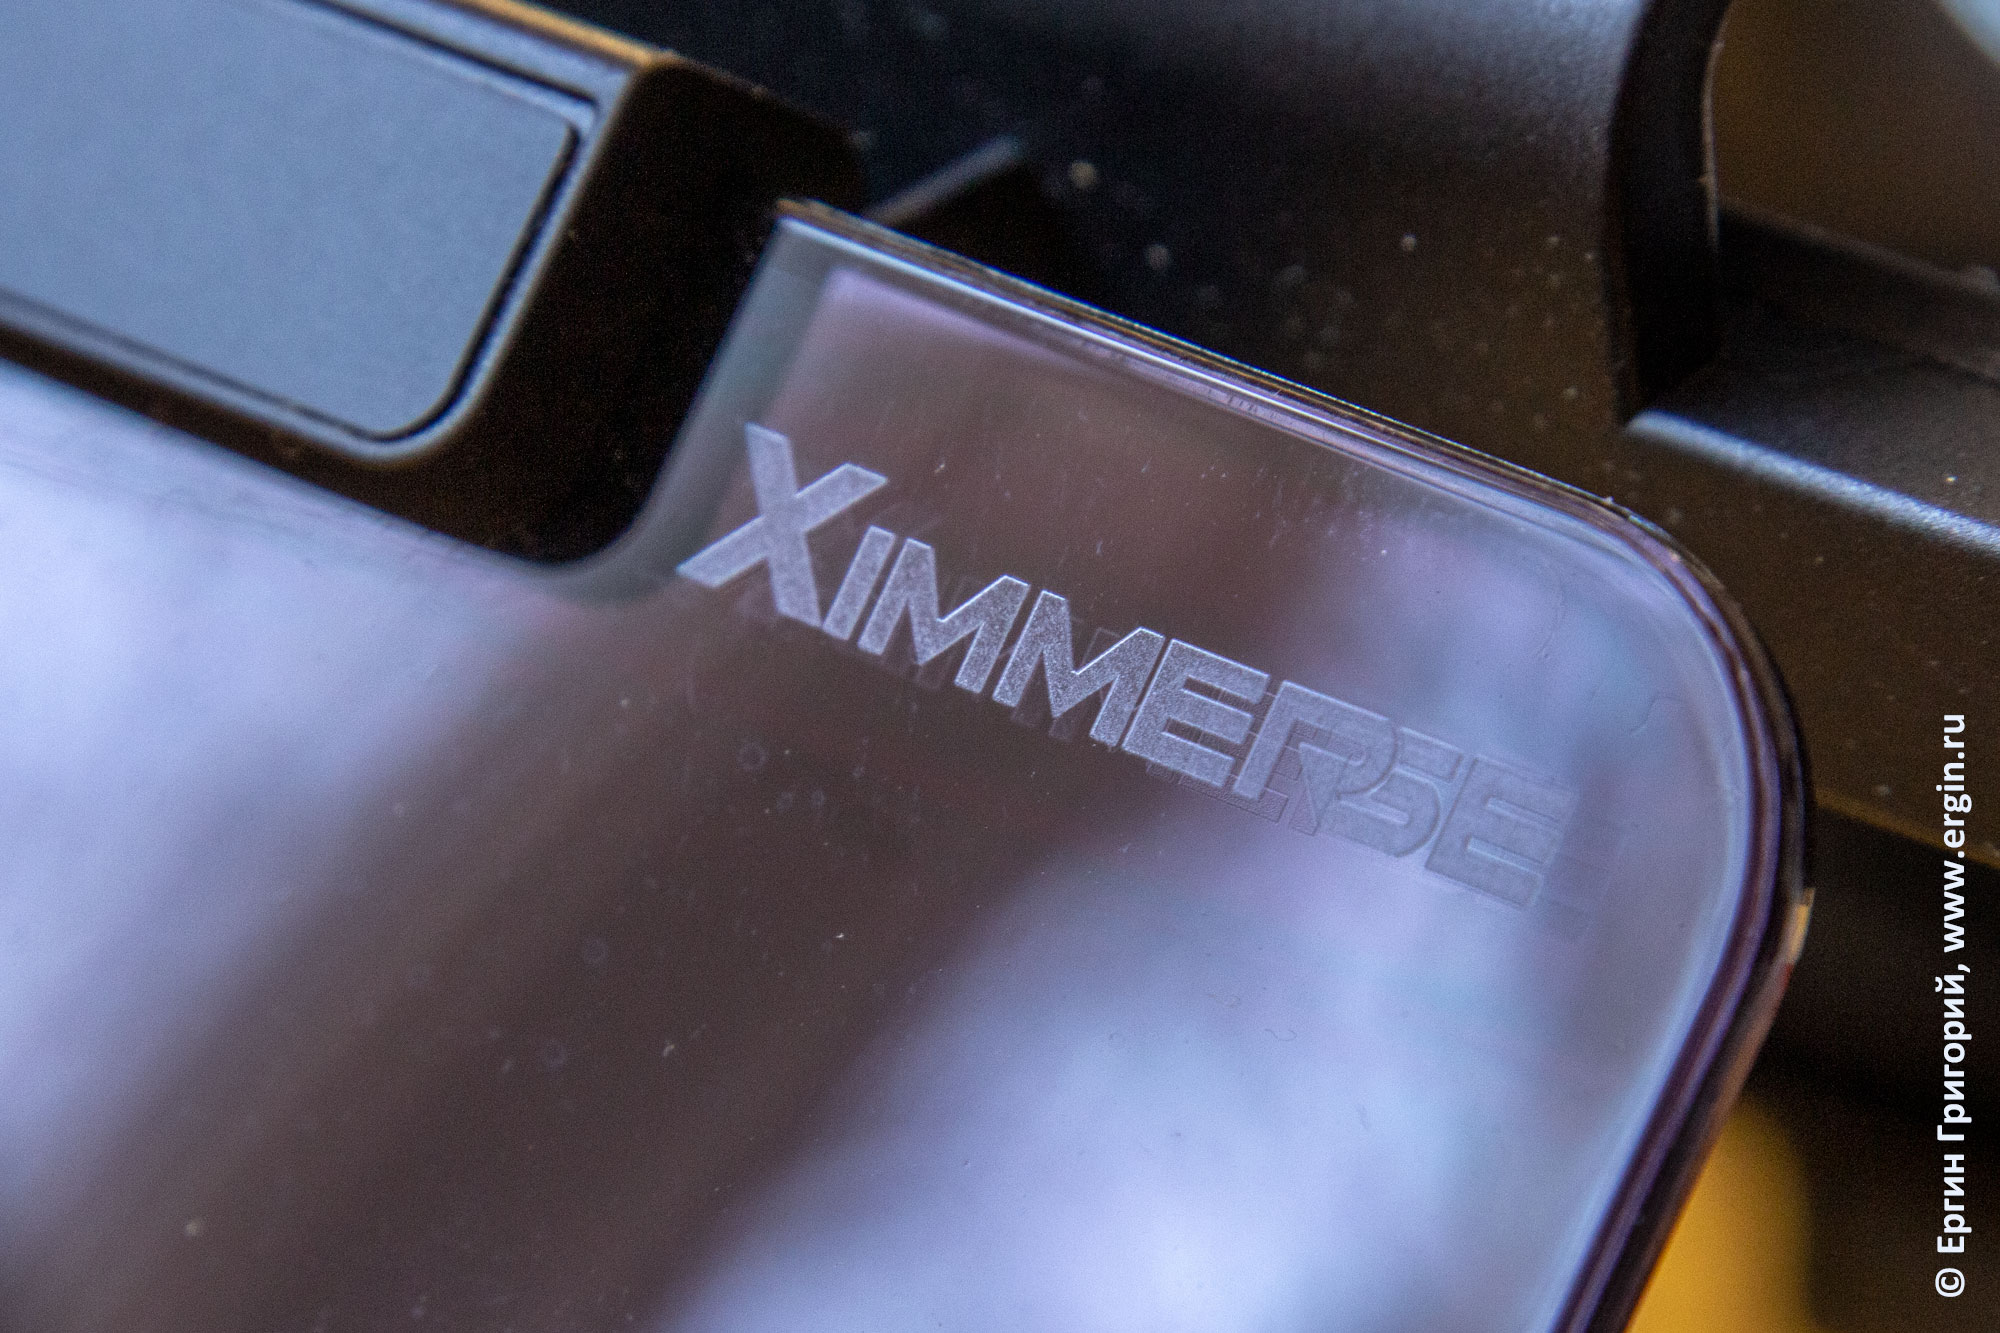 Ximmersе фрима производитель выгнутого зеркала бюджетного FPV